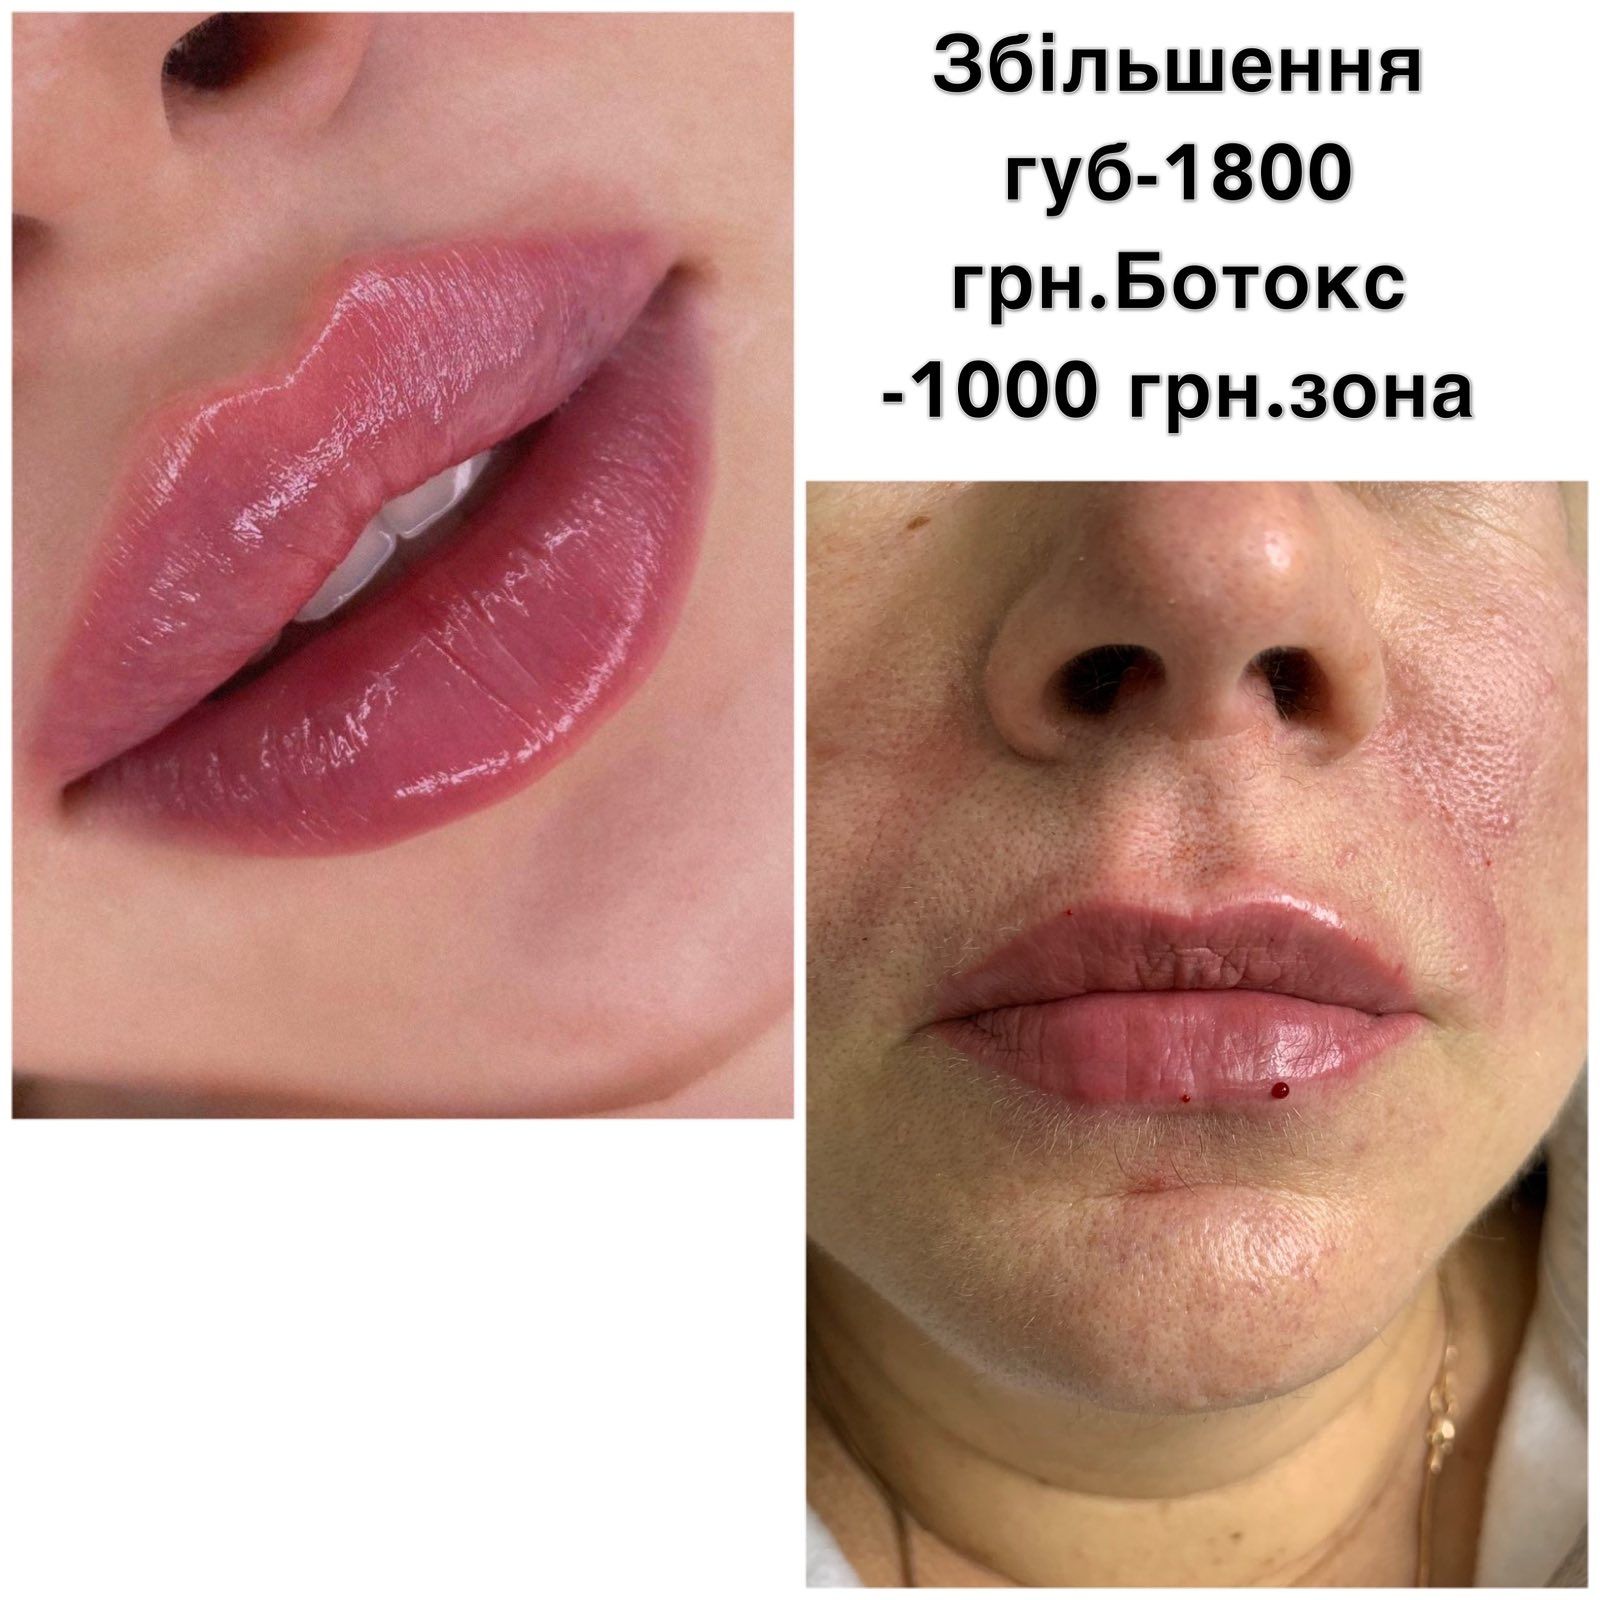 Збільшення губ - ін'єкційна косметологія в Борисполі